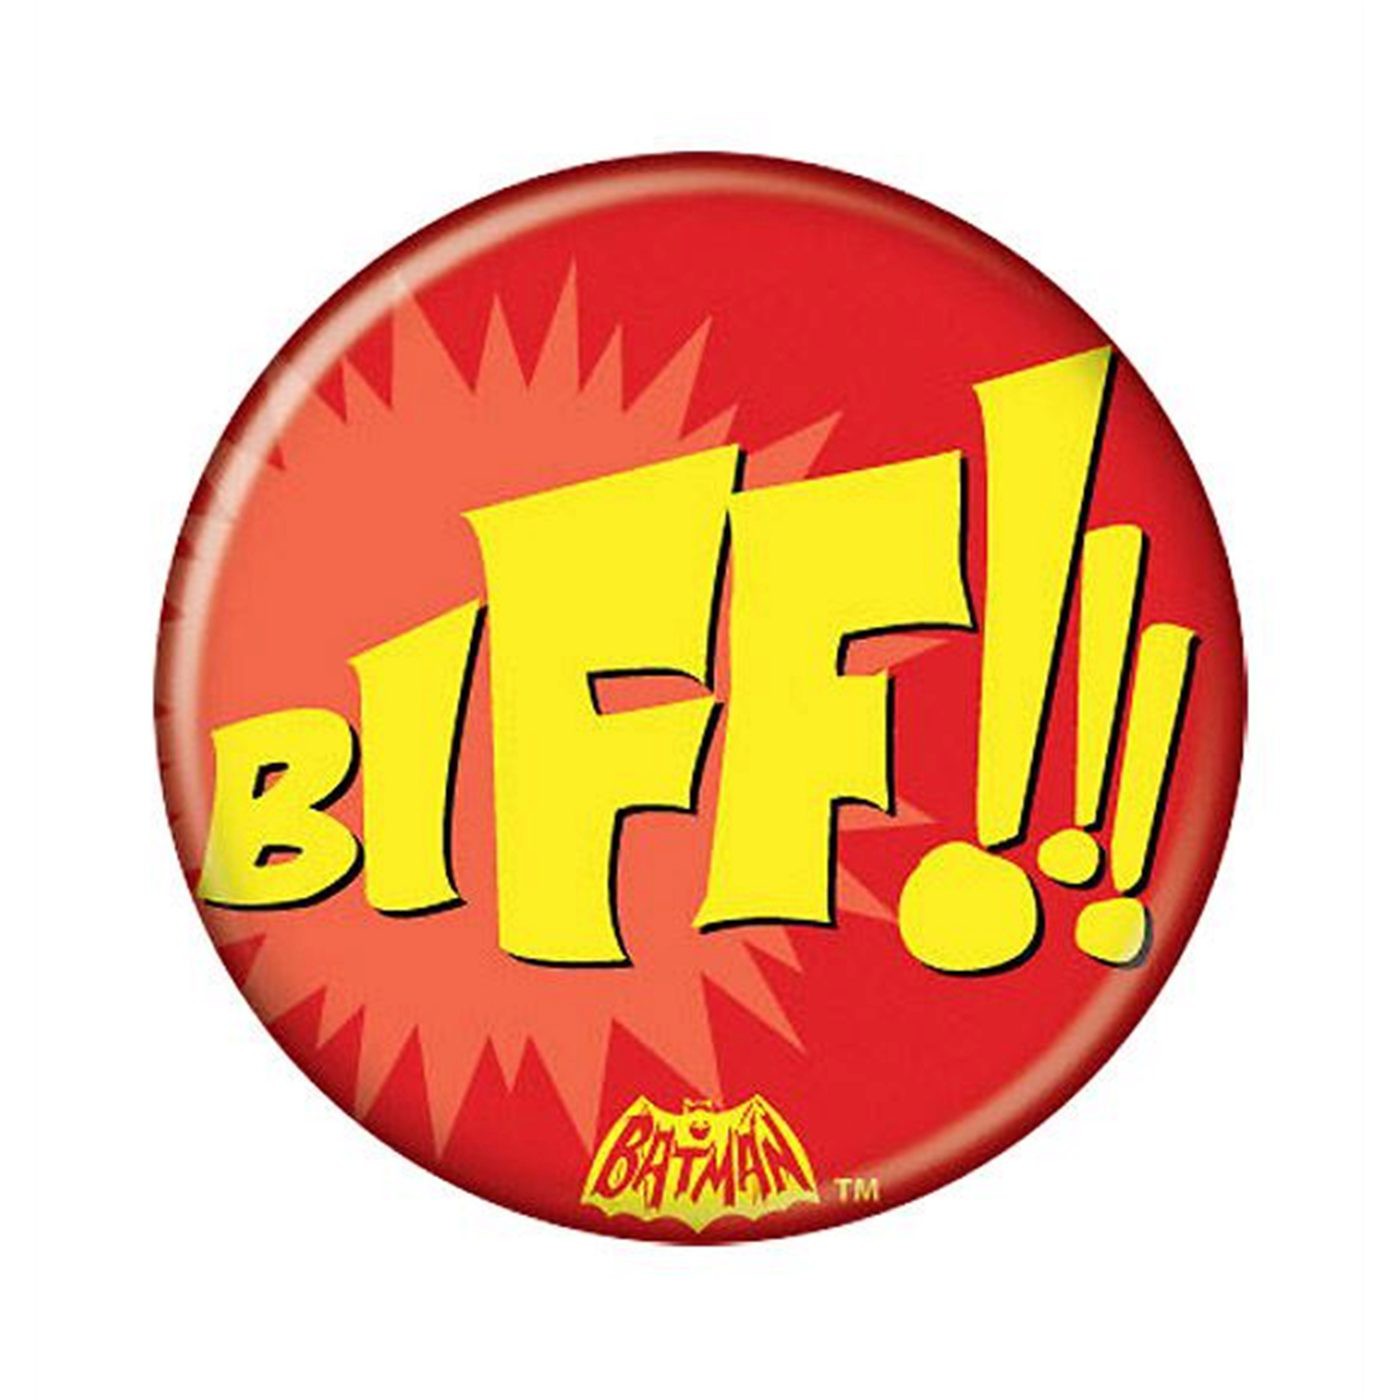 Batman 66 BIFF!!! Button